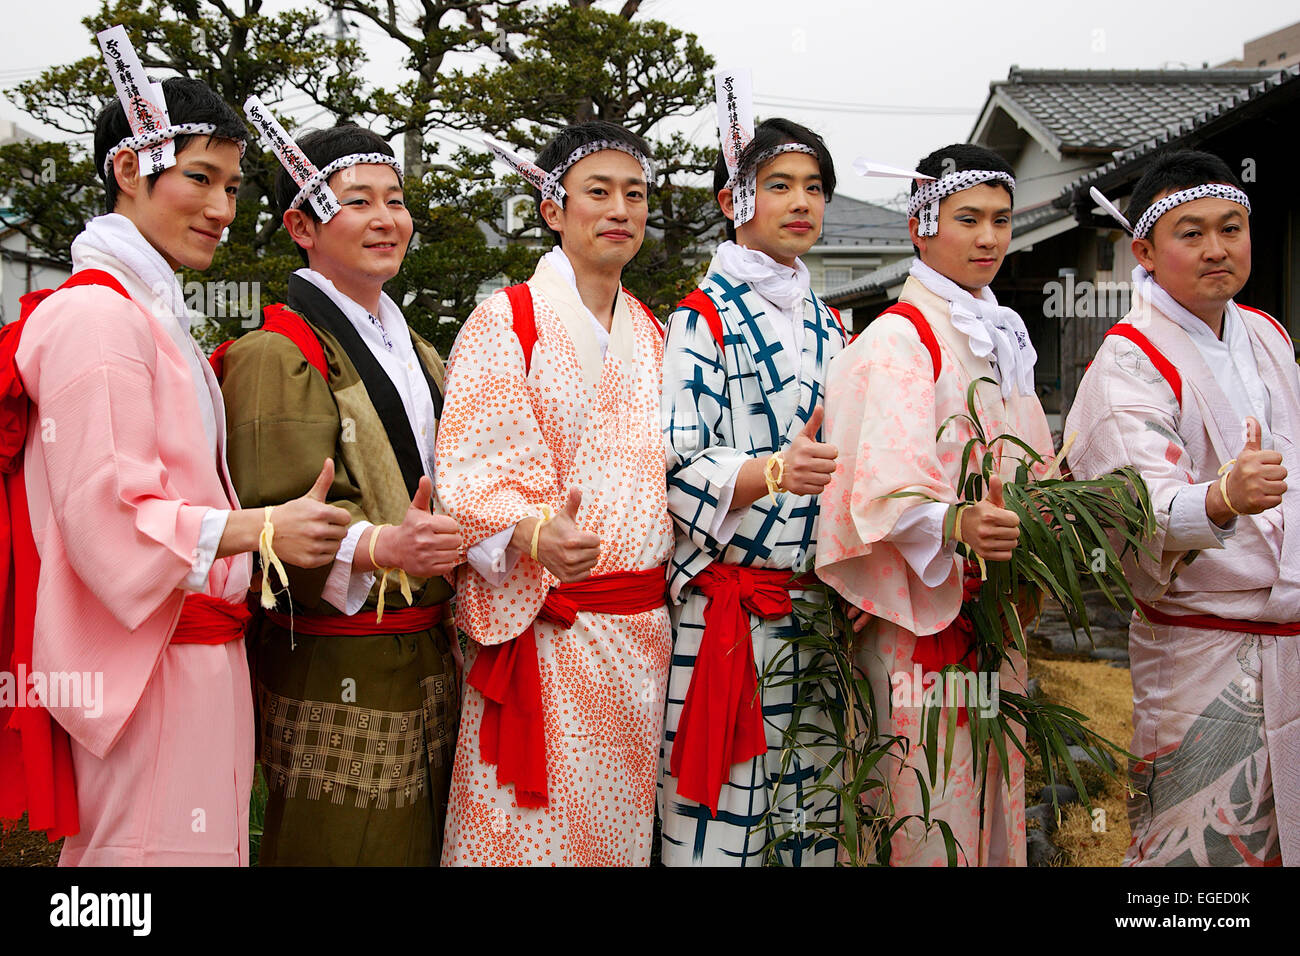 Teilnehmer in Damen Kimonos gekleidet und geschminkt posieren für ein Foto während der Ikazuchi kein Daihannya-Festival am 22. Februar 2015 in Tokio, Japan. Festival freiwillige tragen 6 Behälter aus dem Shinzoin-Tempel in der Nachbarschaft um böse Geister zu jagen. Das Festival Ursprünge sind unsicher; eine Legende erzählt von einem Edo-Ära Priester aus Shinzoin Tempel besuchen Haus durch Haus, böse Geister zu jagen, wenn Cholera weit verbreitet in Tokio war, und eine andere Legende einen Mann beschreibt in einer Frauen Kimono Weg böse Geister von seiner Schwester gekleidet, die an Tuberkulose erkrankt war. ( Stockfoto